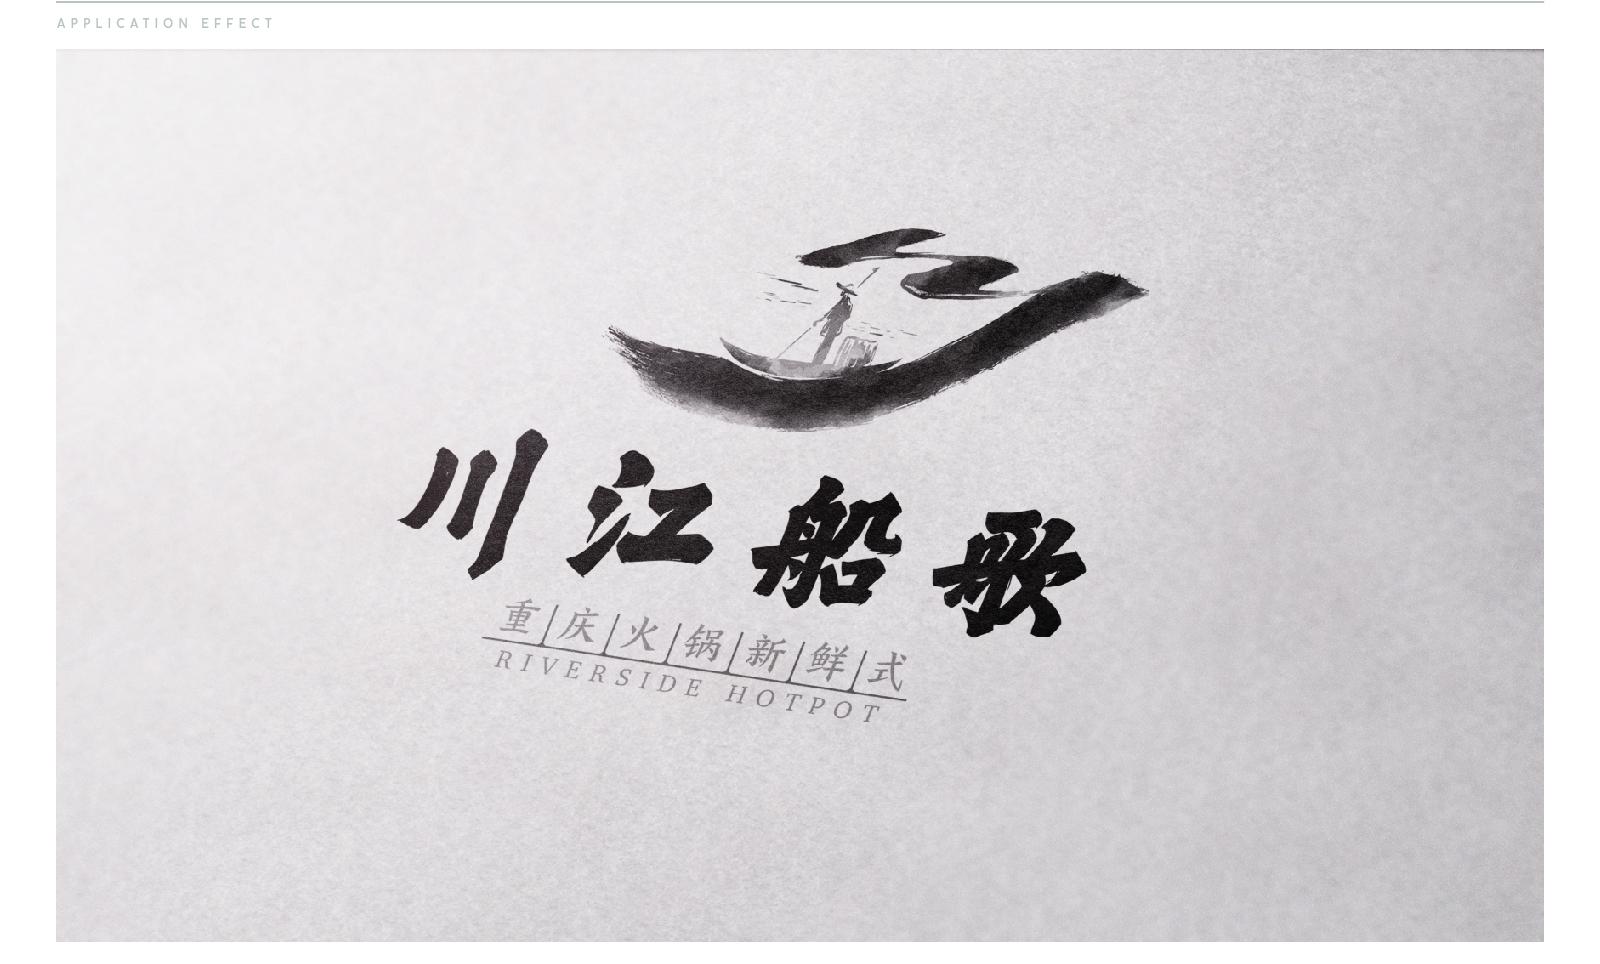 火锅logo设计——川江船歌